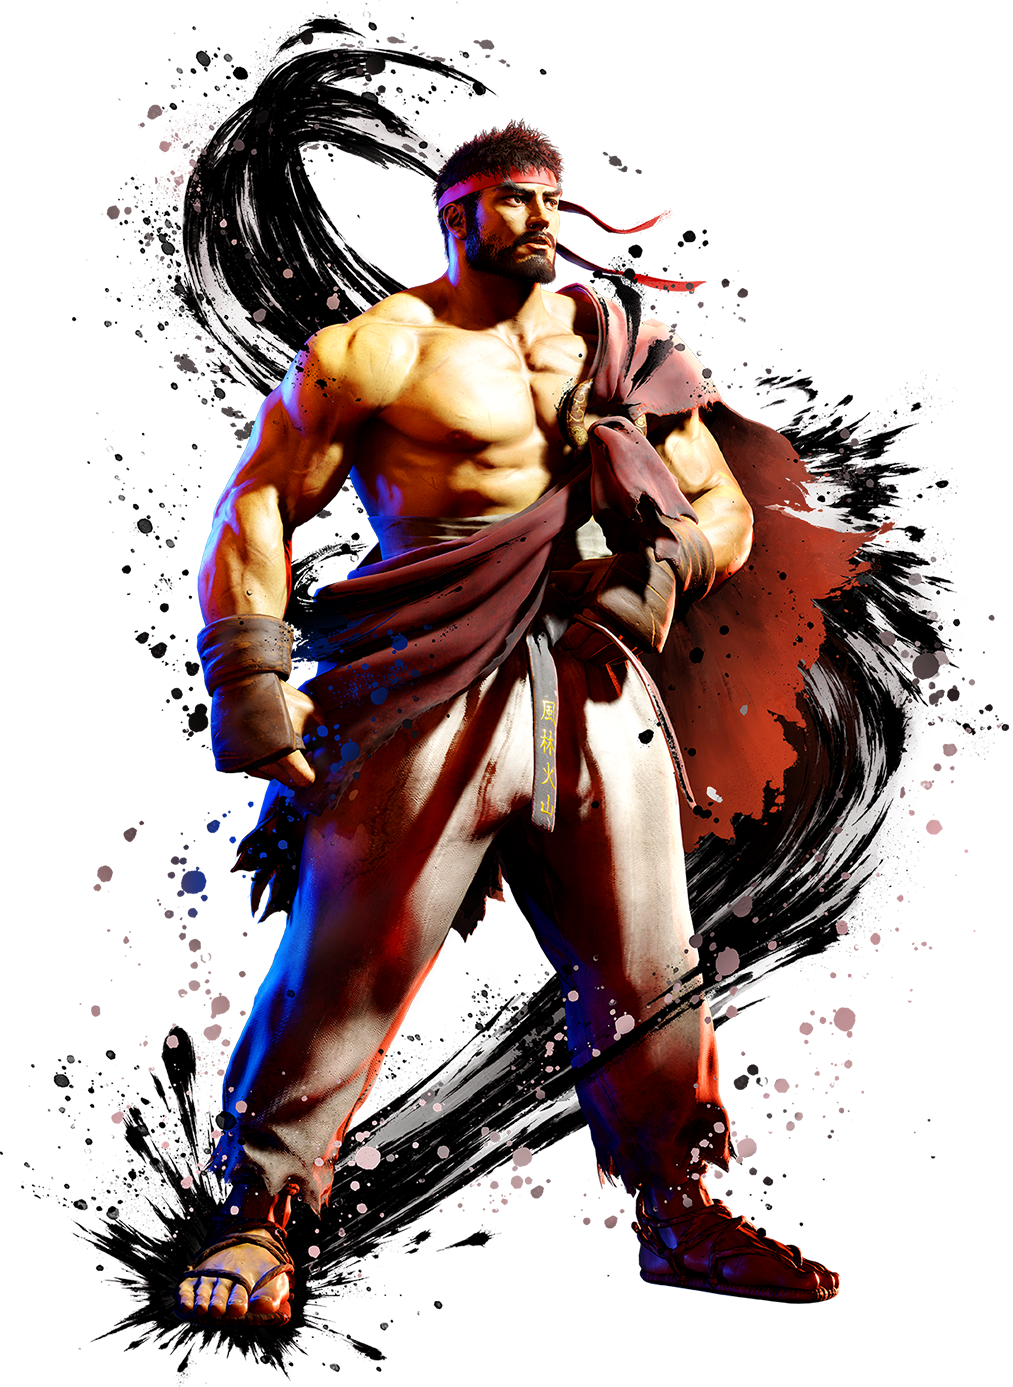 Ryu Street Fighter 6 Fanart